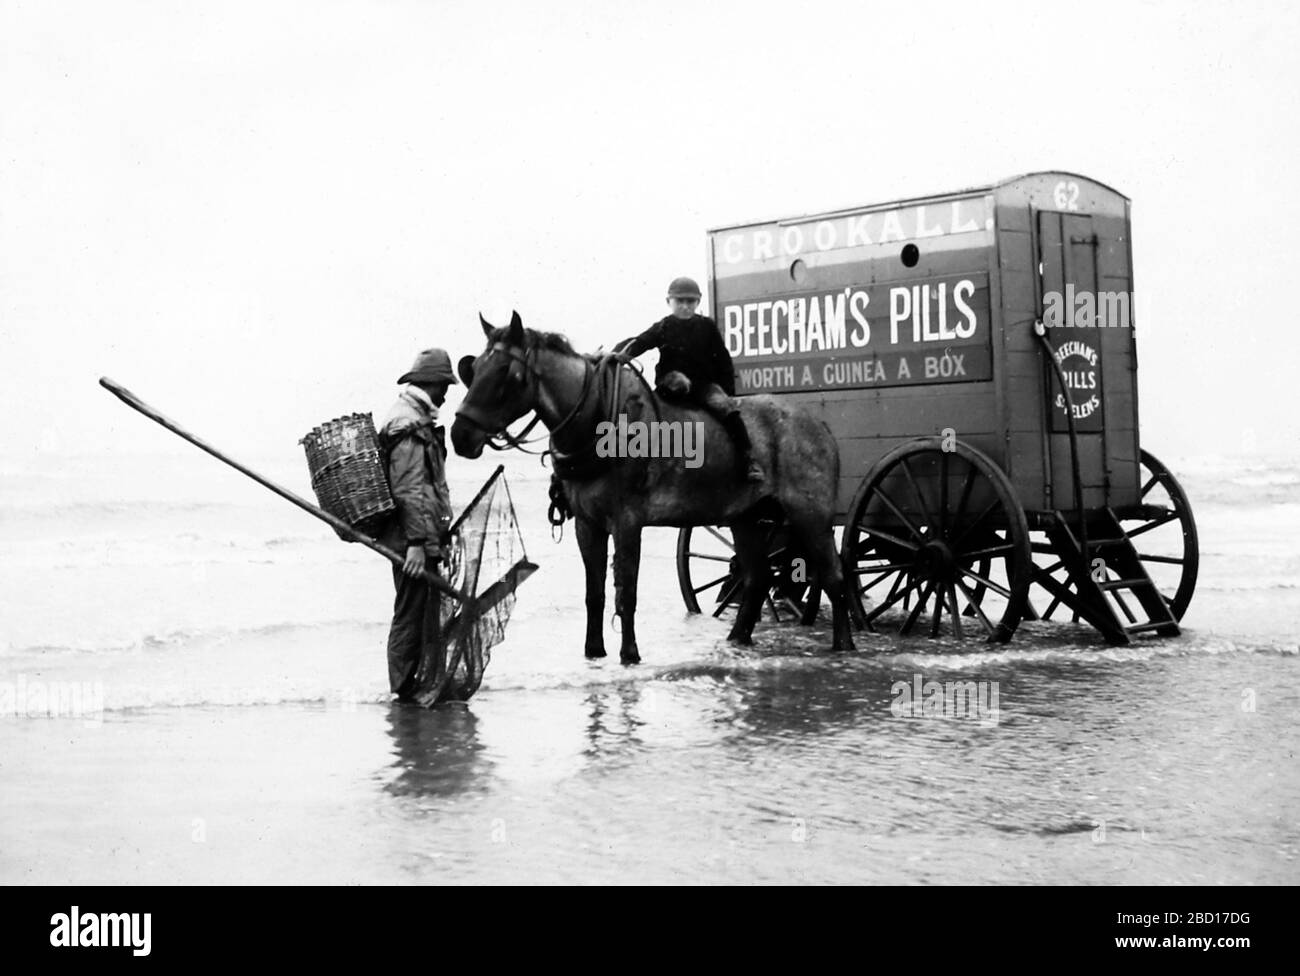 Une crevette et une machine de baignade, Blackpool, époque victorienne Banque D'Images